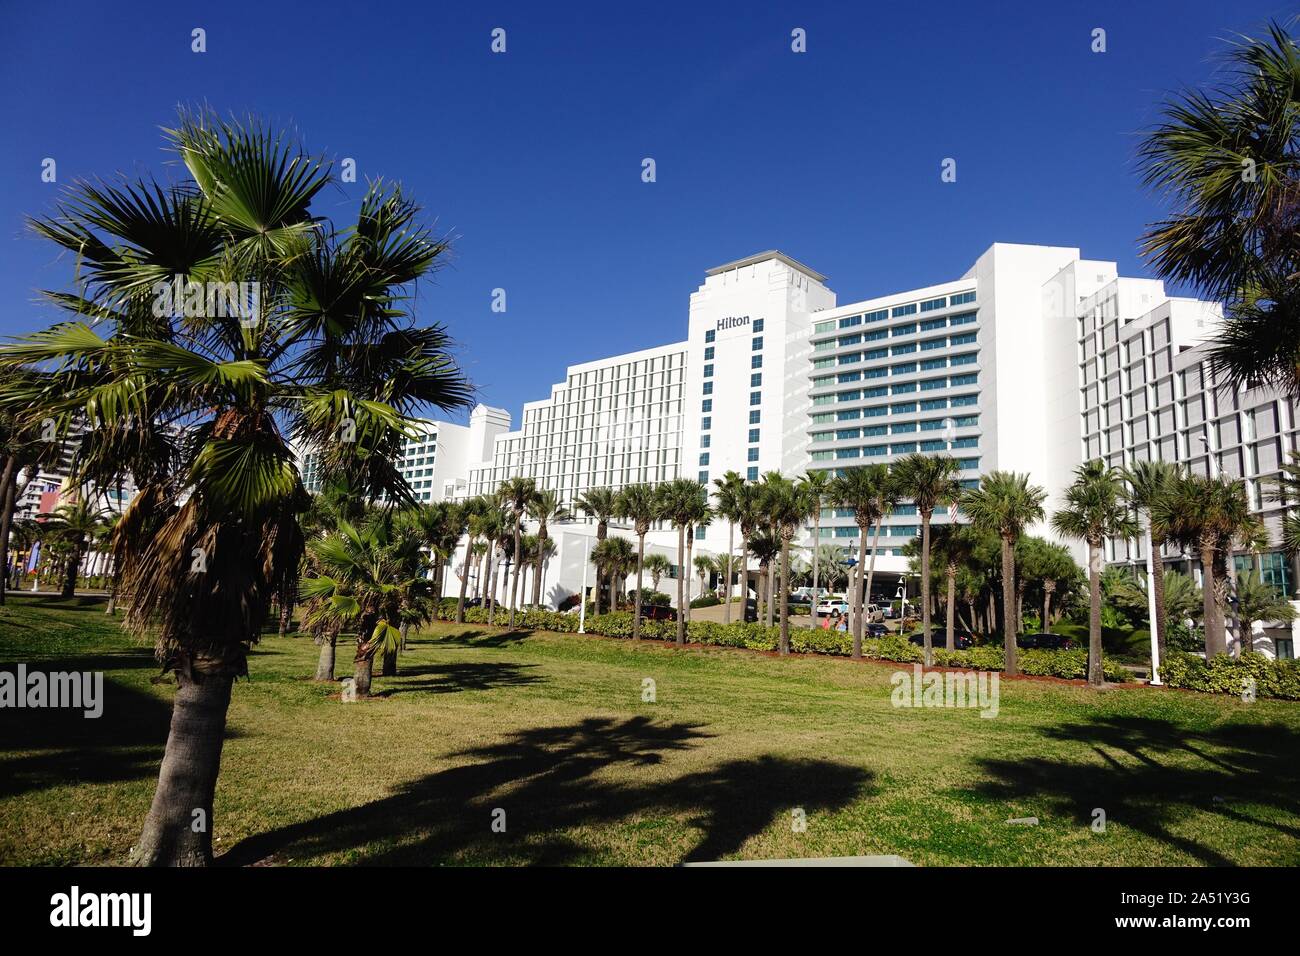 El Hilton es uno de los muchos hoteles frente al mar en Daytona Beach Foto de stock